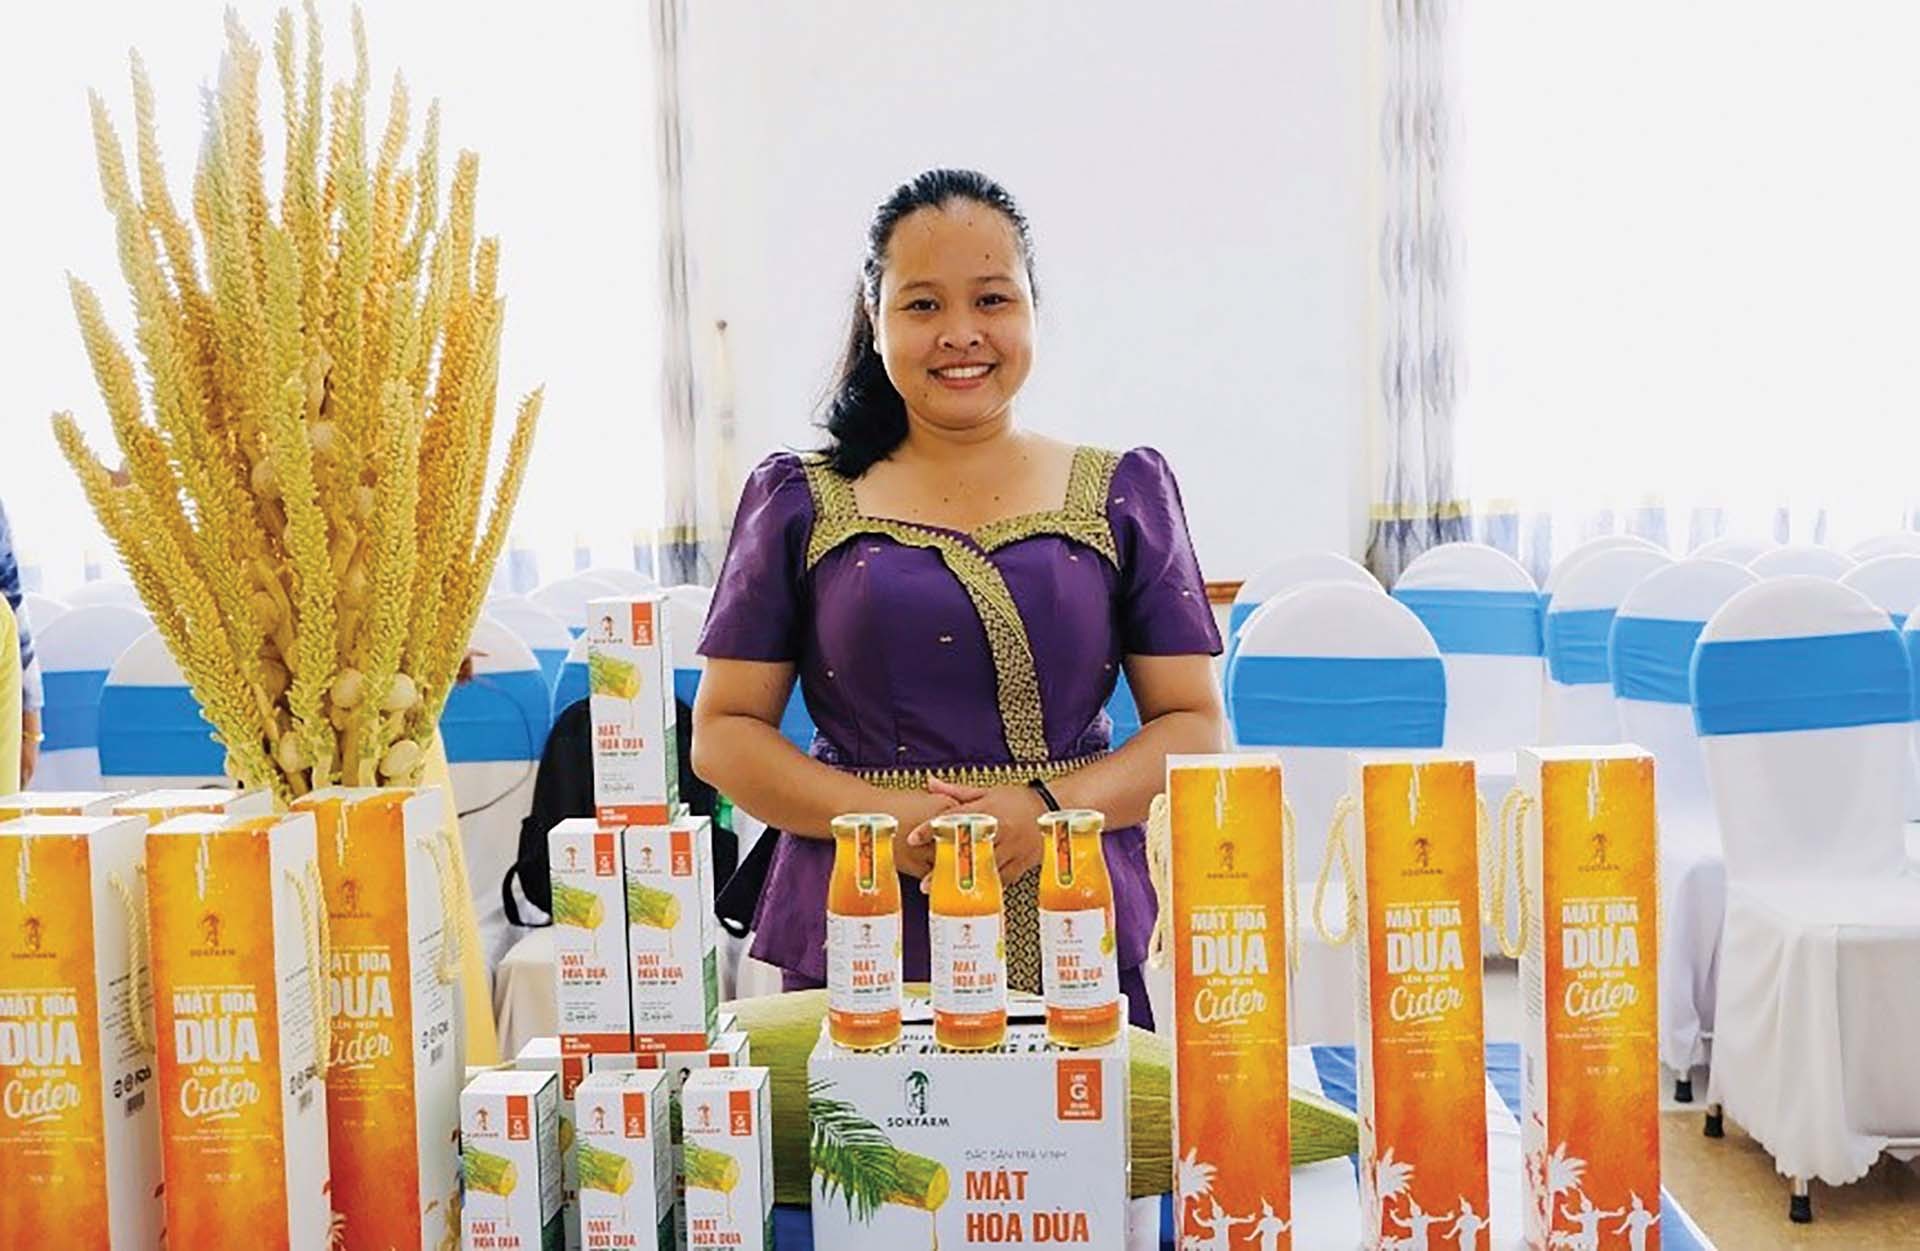 Chị Thạch Thị Chal Thi bên sản phẩm mật hoa dừa. (Ảnh: NVCC)